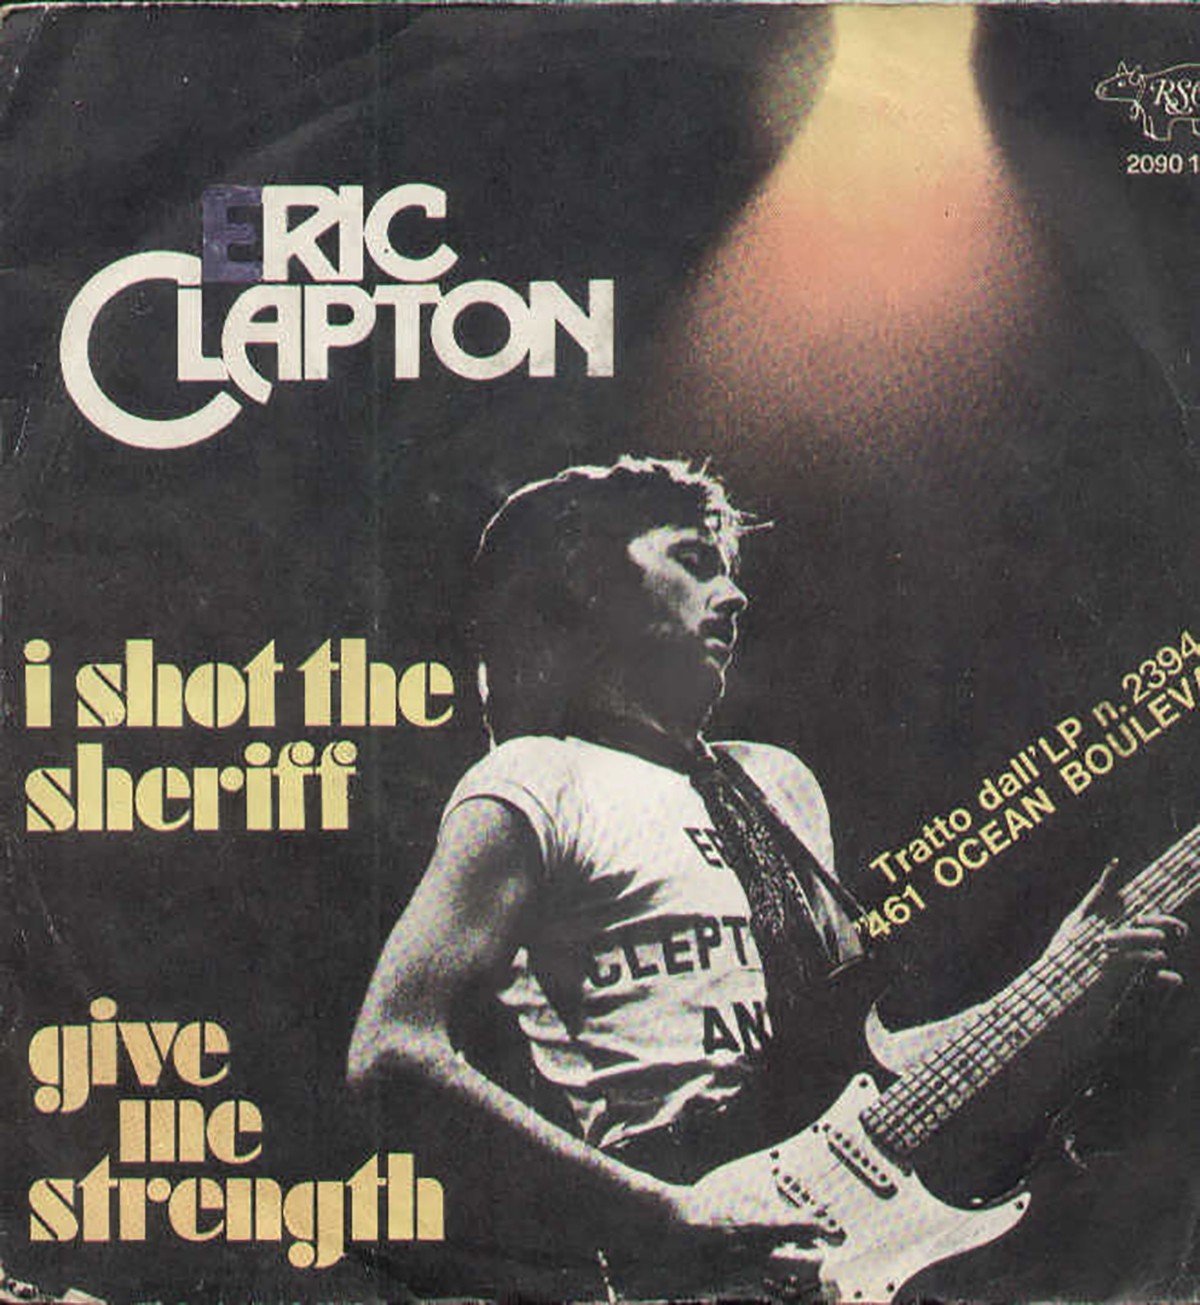 Eric Clapton - I shot the sheriff